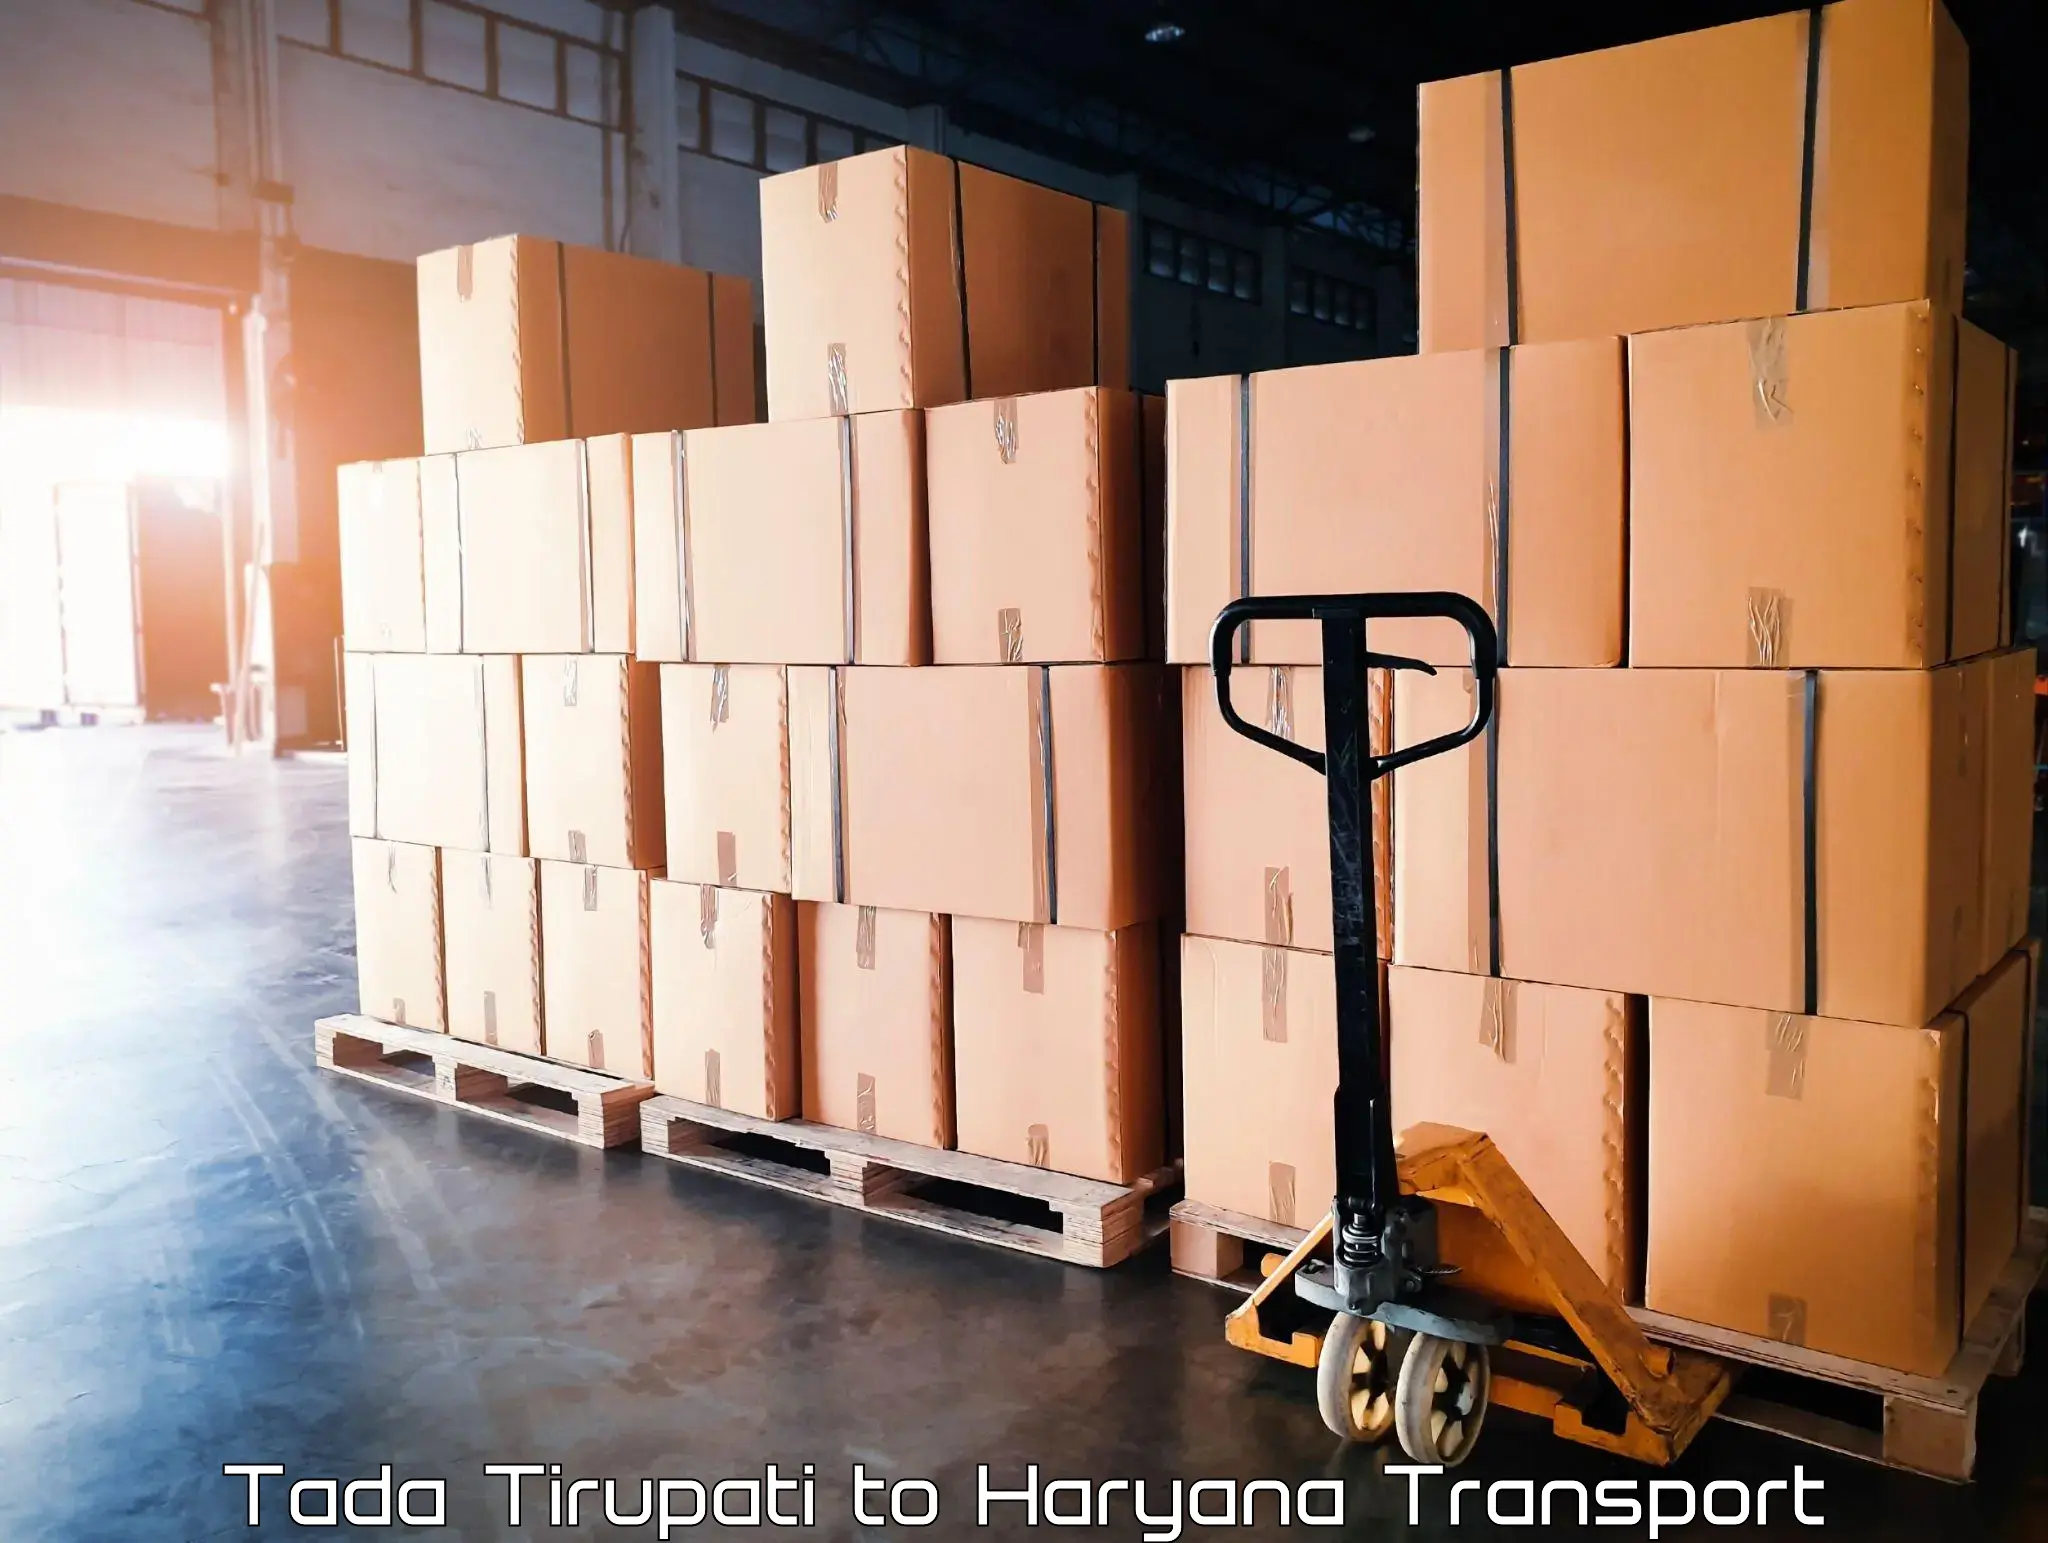 Container transport service Tada Tirupati to Shahabad Markanda